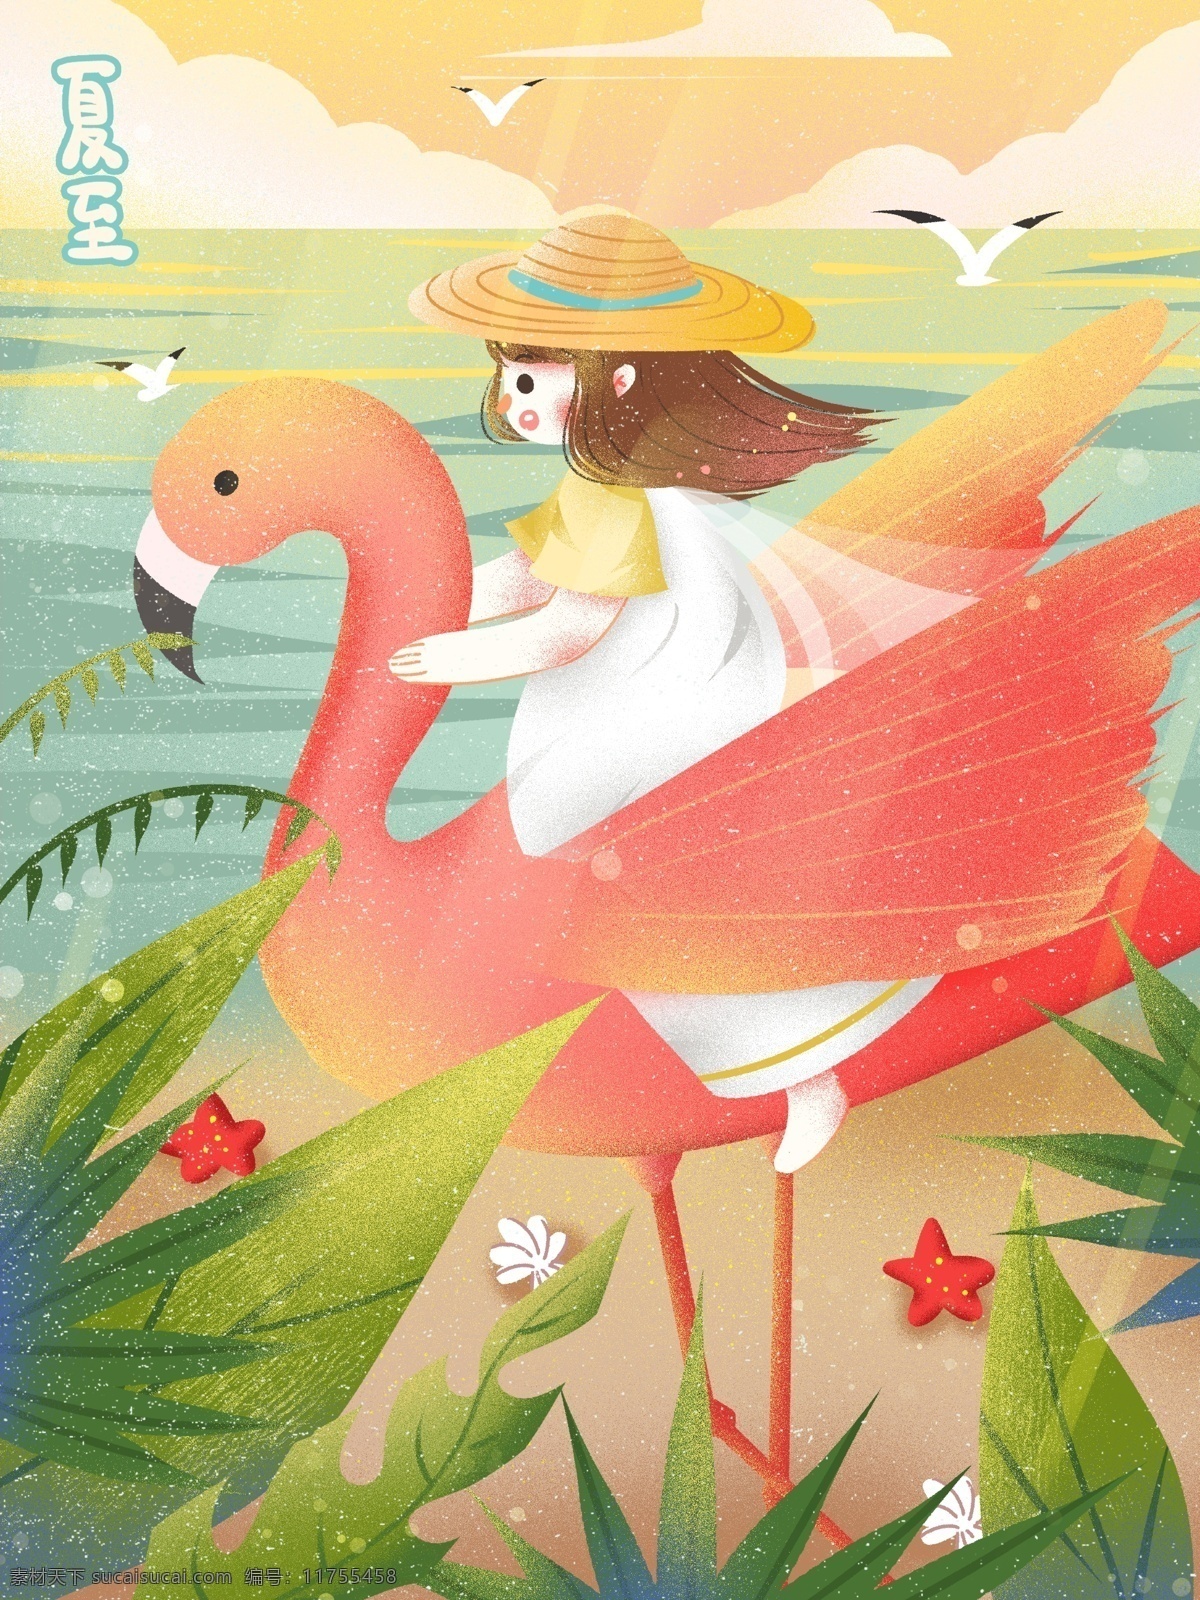 夏至 仙境 海边 度假 火烈鸟 创意 唯美 海 节气 插画 治愈 梦幻 可爱 卡通 夕阳 海星 贝壳 热带植物